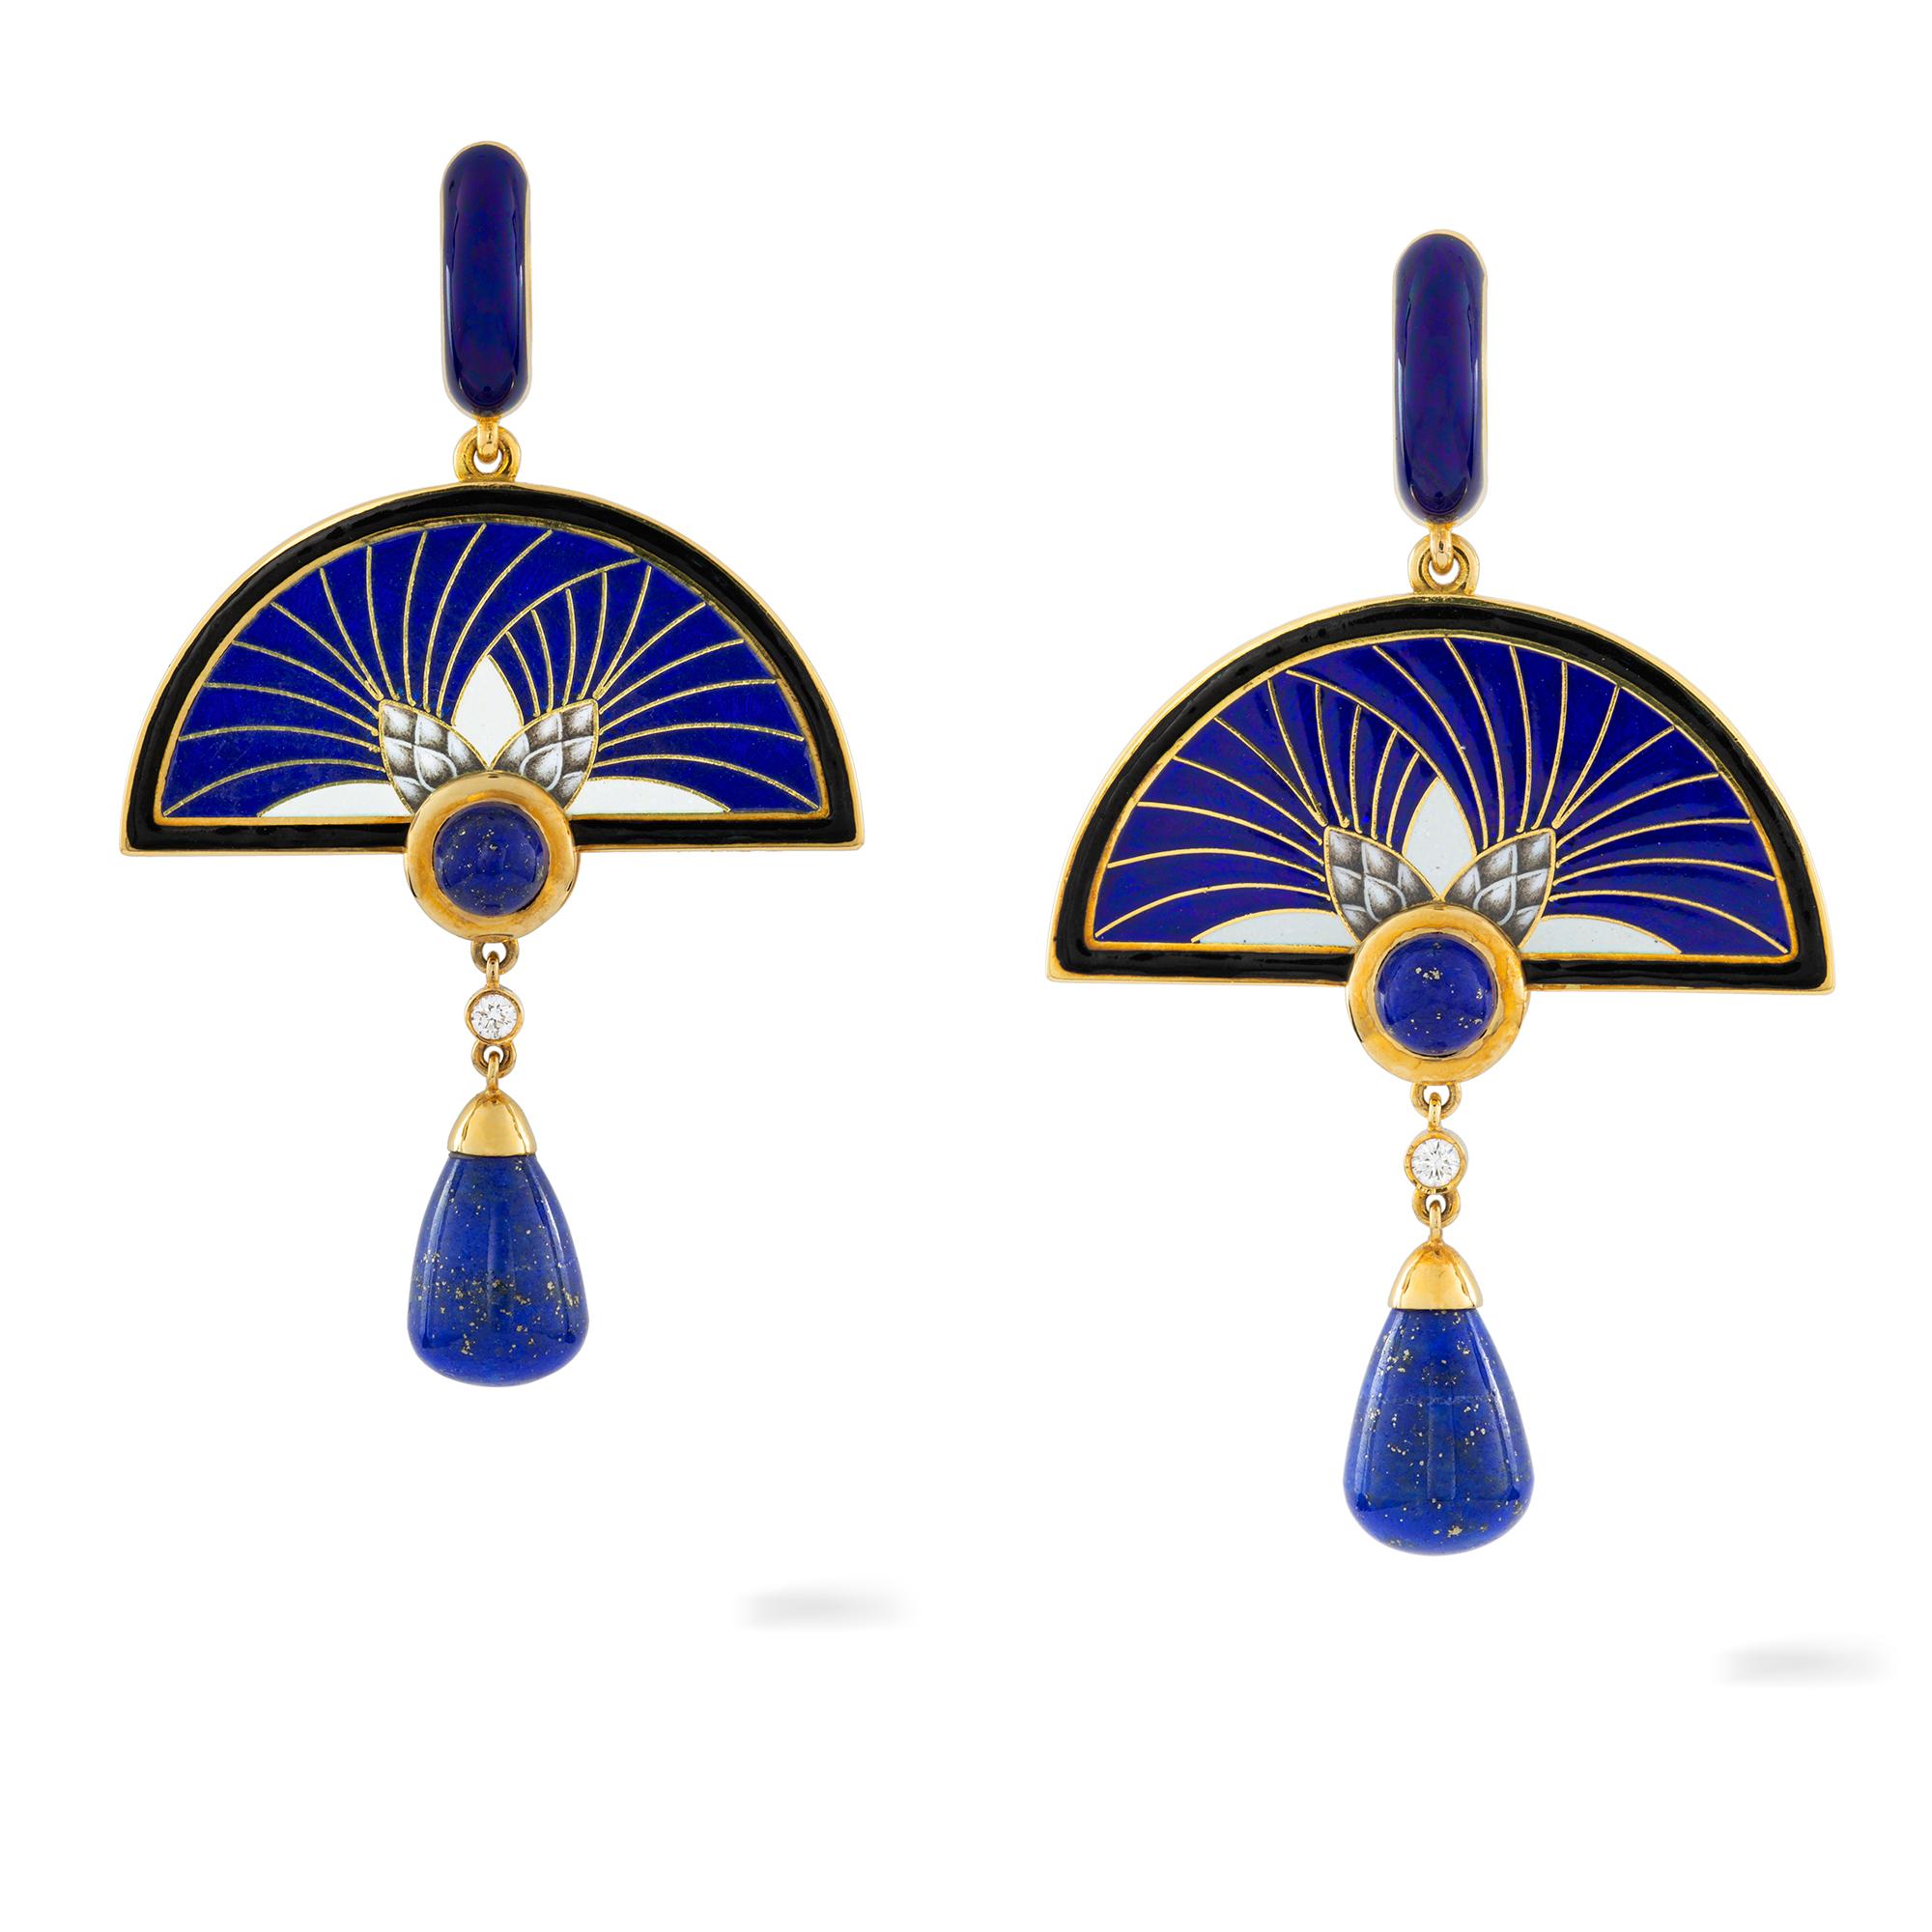 Contemporary Pair of Burdock Earrings by Ilgiz F